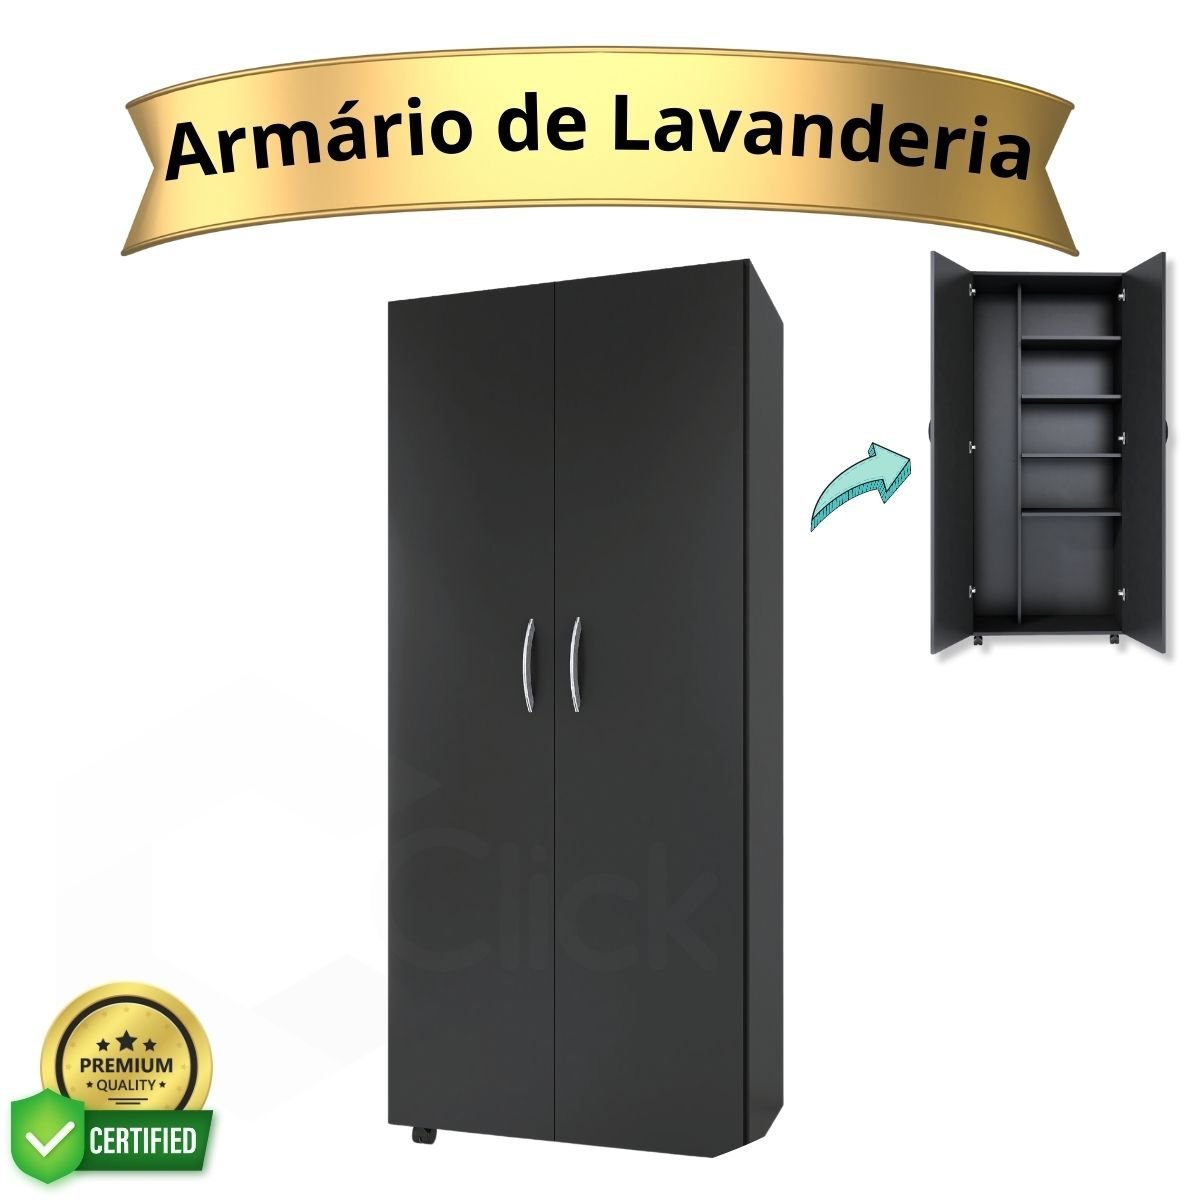 Armário Para Lavanderia Multiuso 2 Portas Alto Dispensa ClickForte Armário Lavanderia Preto - 2